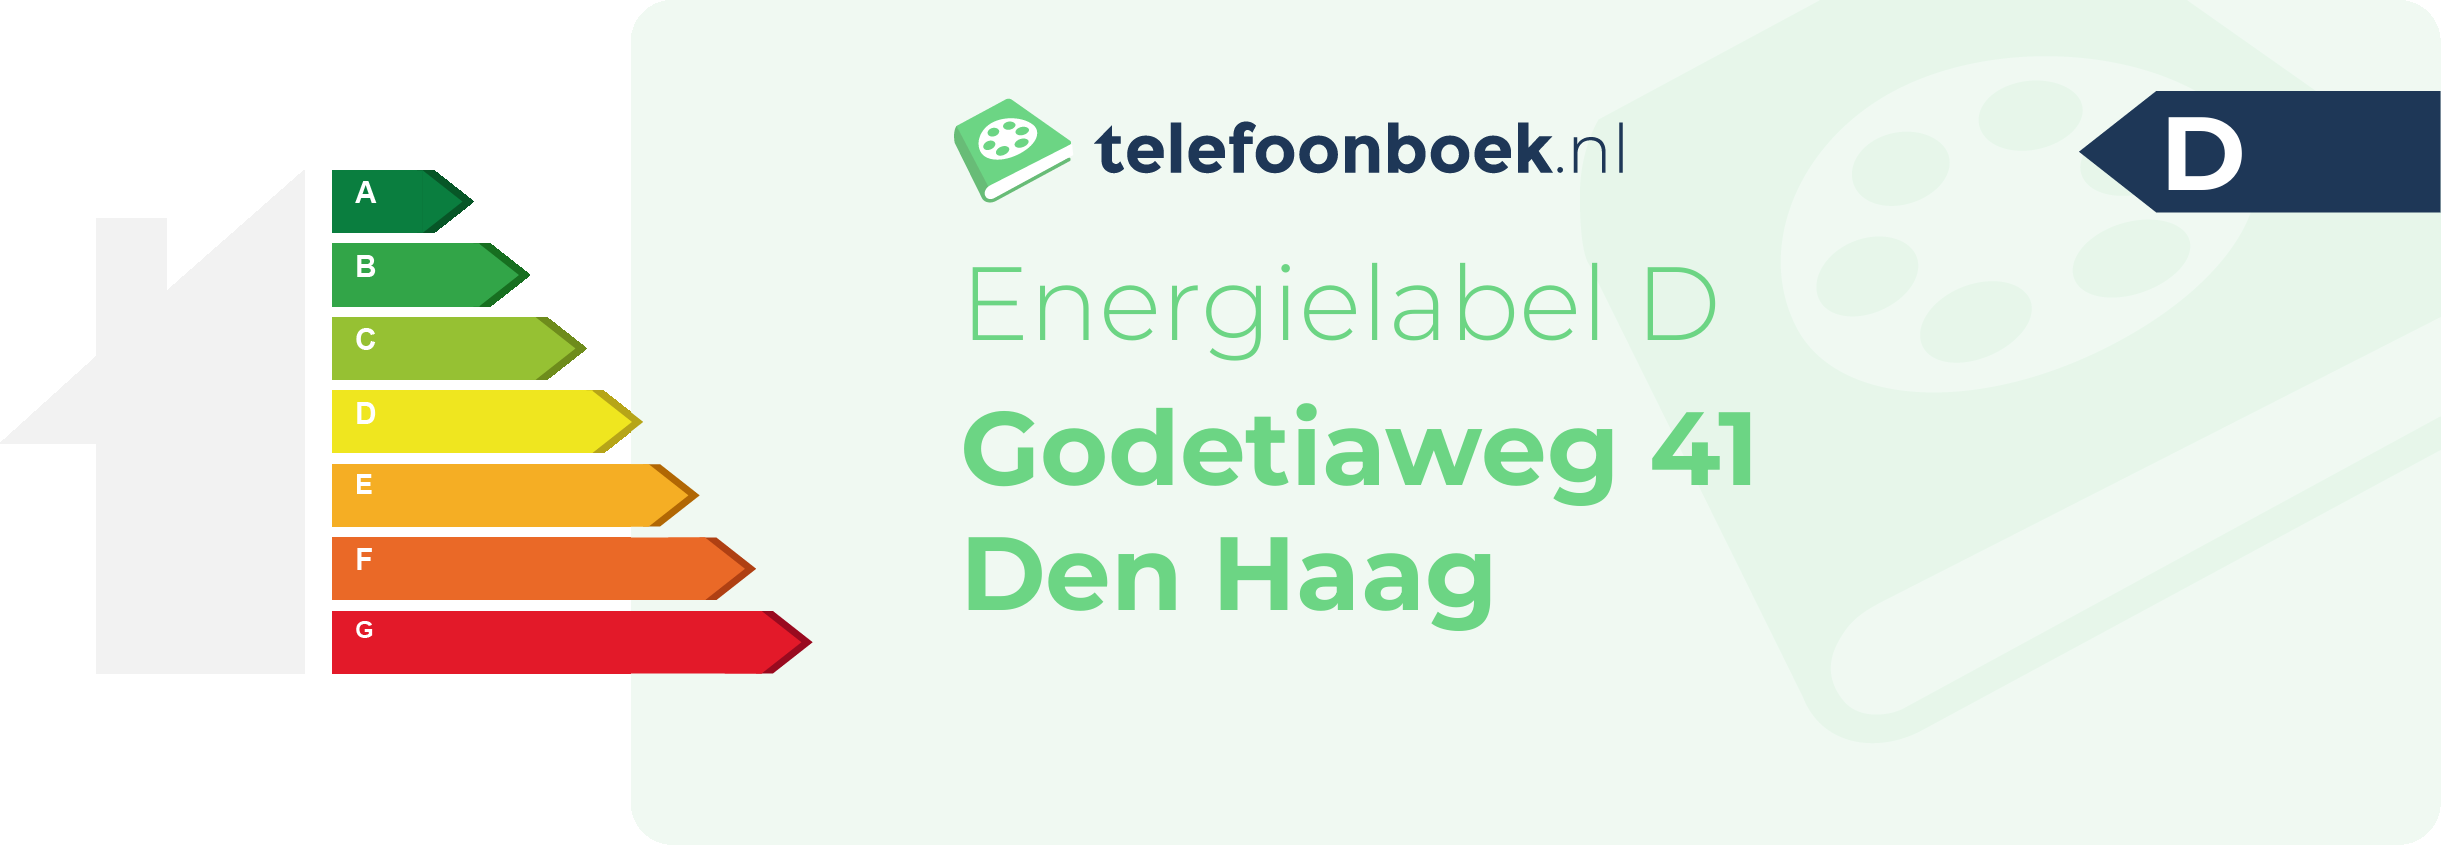 Energielabel Godetiaweg 41 Den Haag